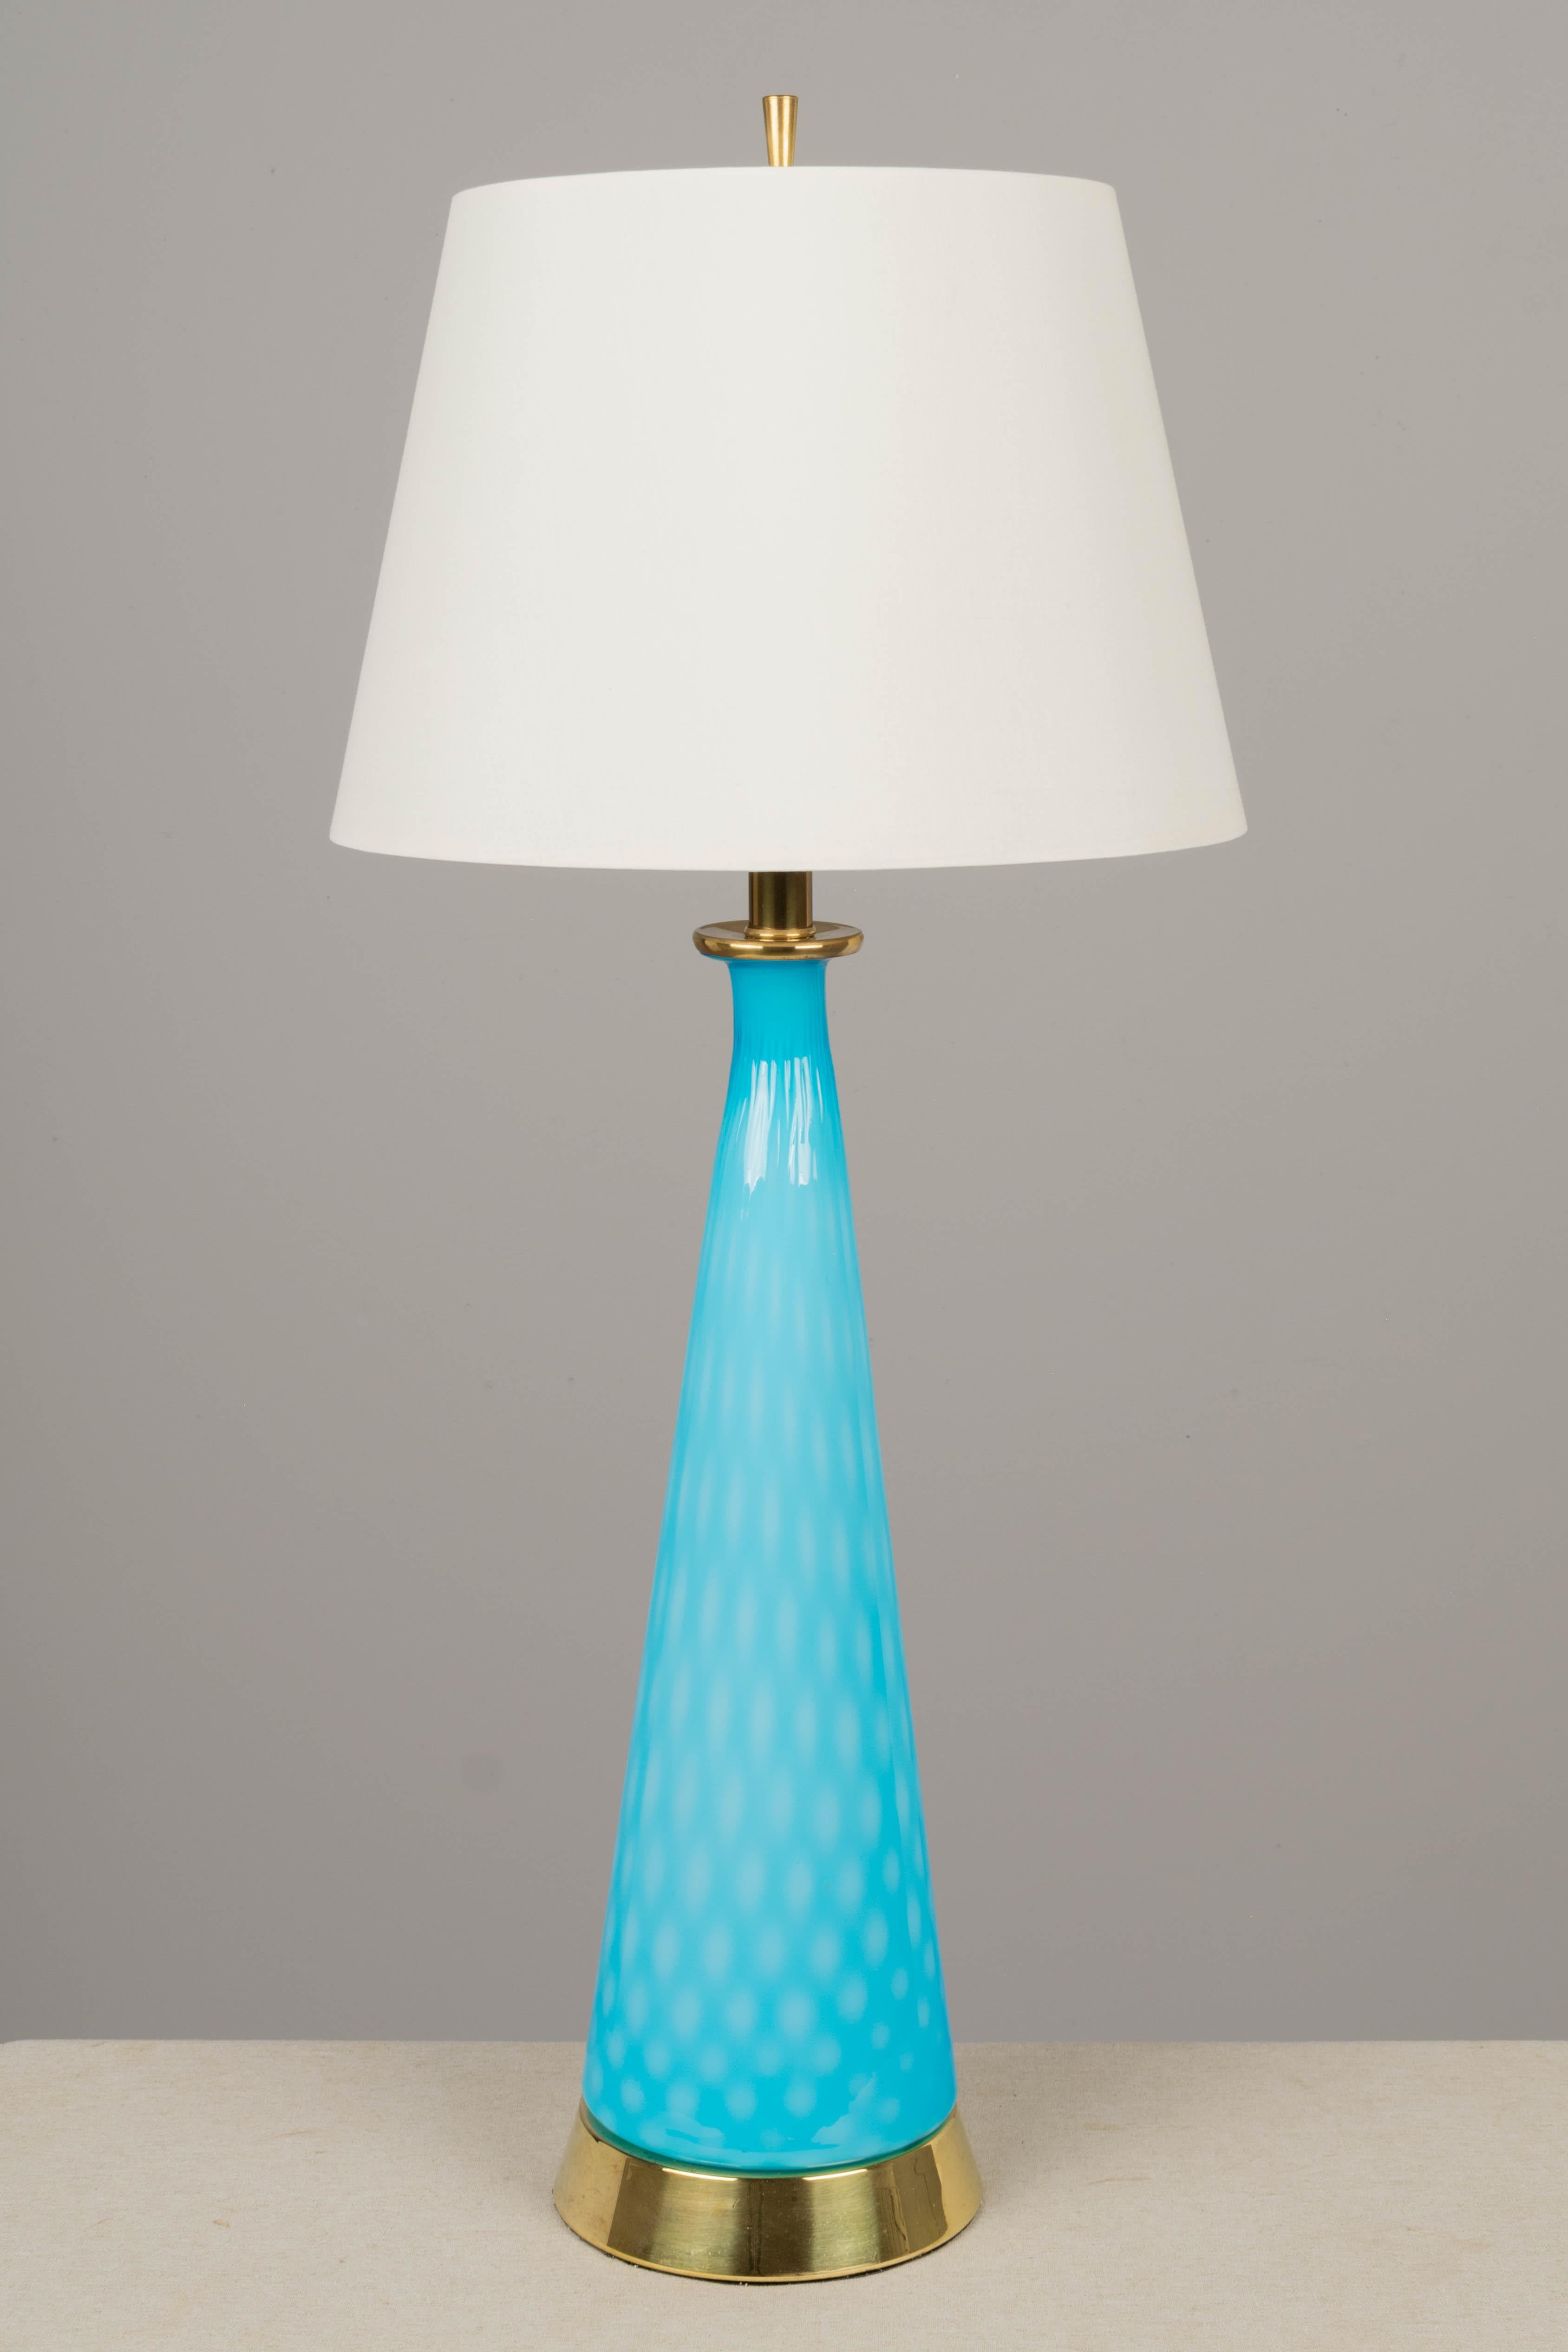 Lampe en verre de Murano de style moderne du milieu du siècle, avec un grand verre moulé en forme de bouteille de couleur bleu aqua brillant. Base originale en laiton. Rééquipement avec une nouvelle prise et un nouveau cordon. L'abat-jour n'est pas